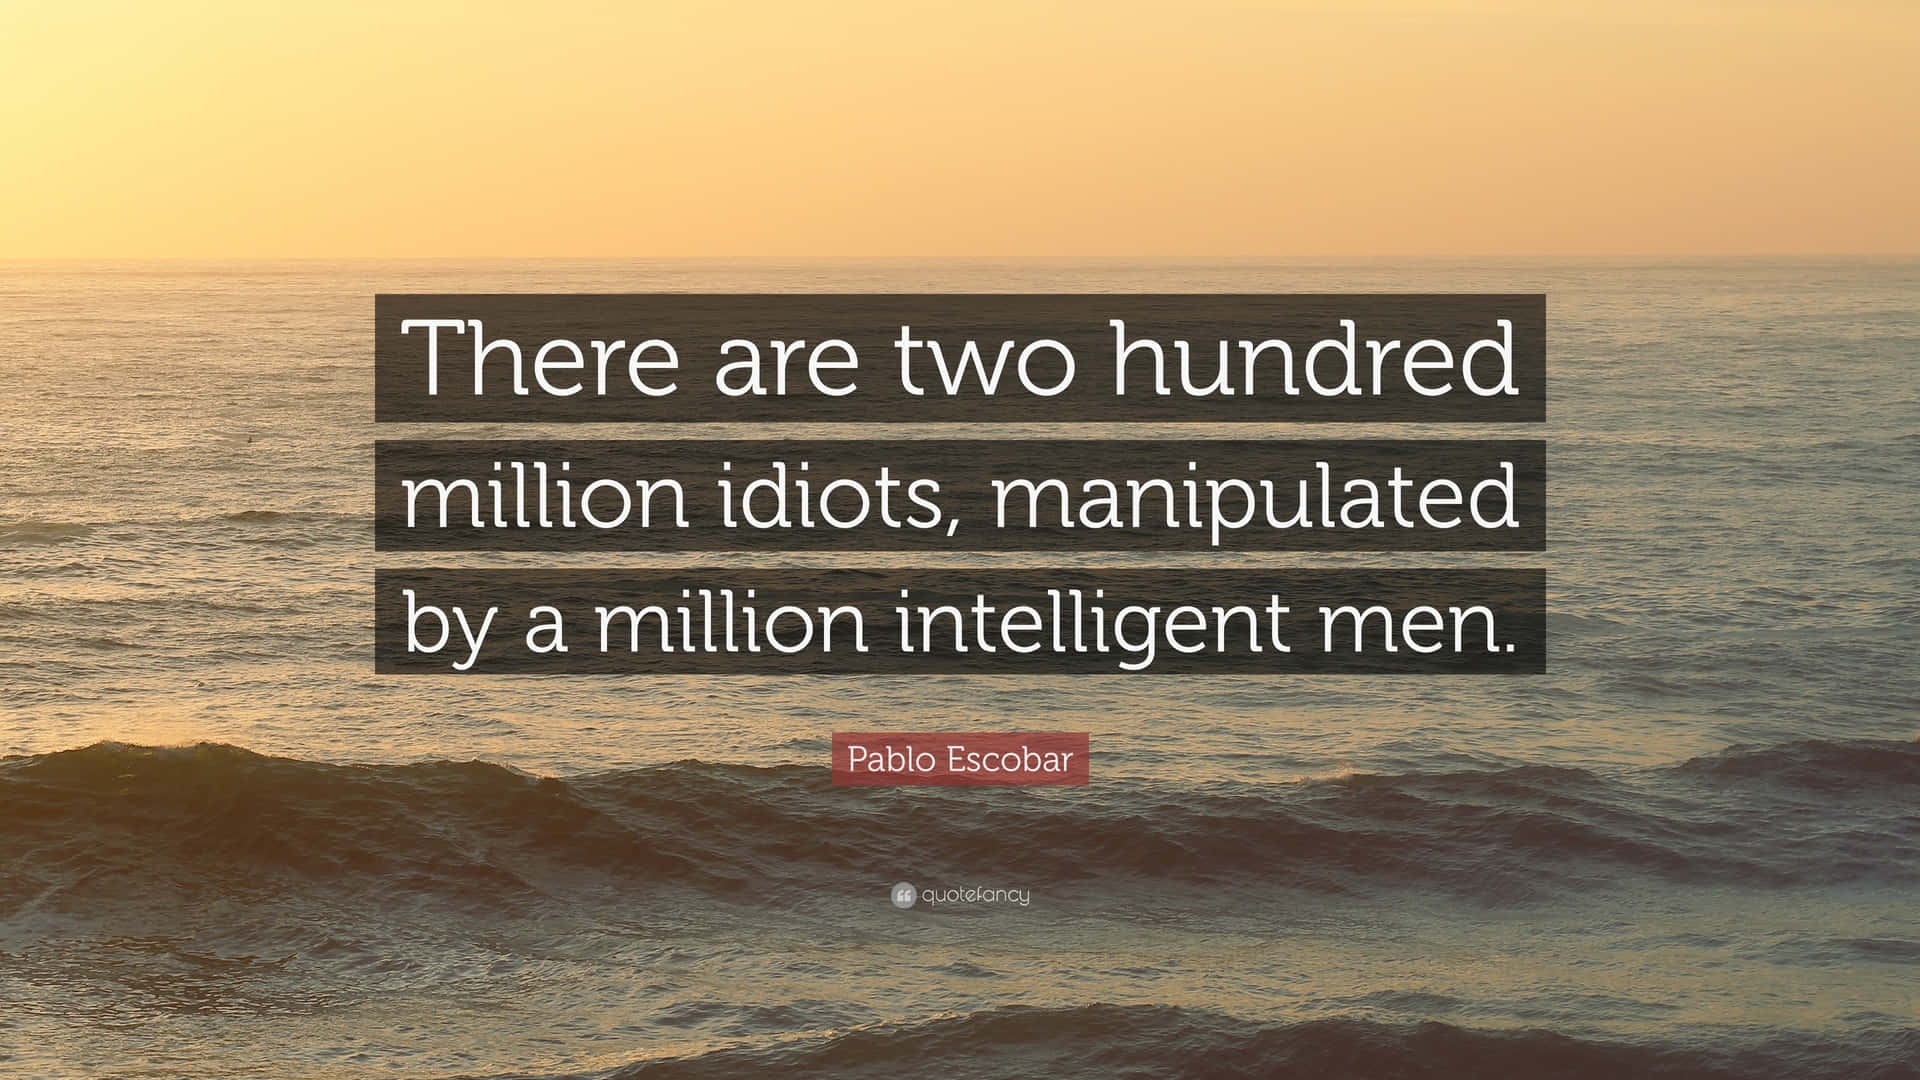 Cisono Duecento Milioni Di Idioti Gestiti Da Un Milione Di Uomini Intelligenti